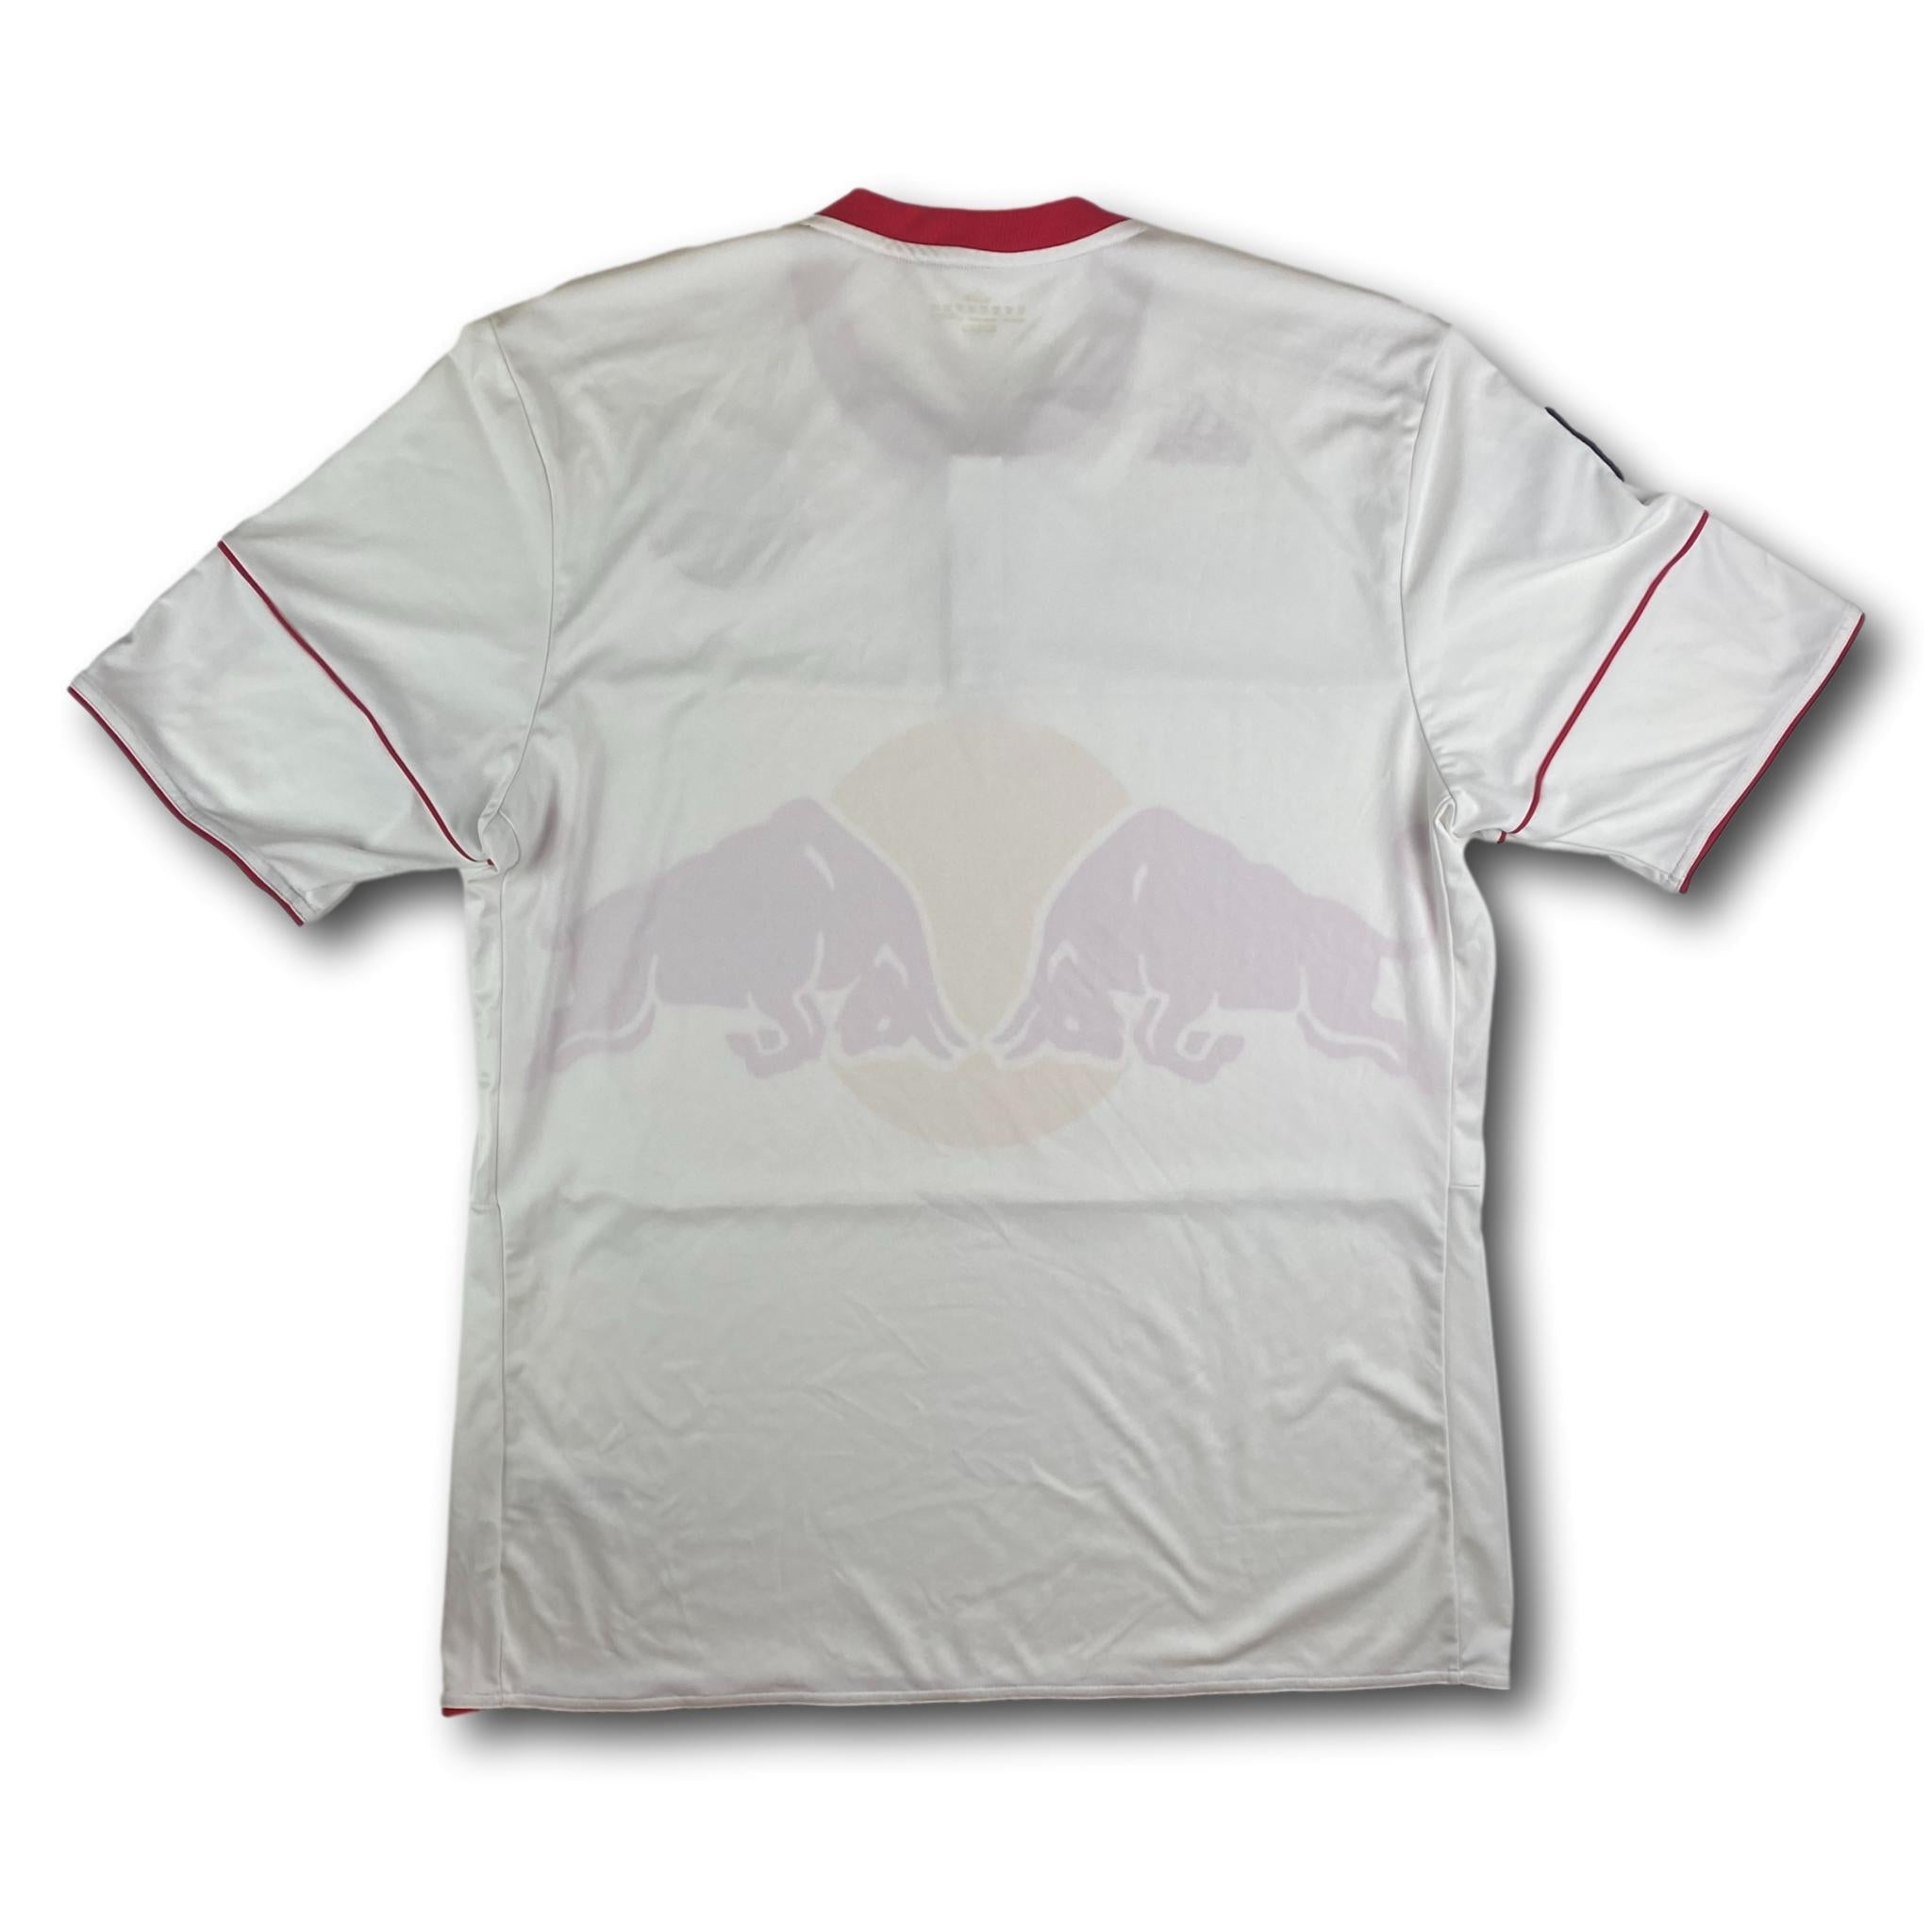 Fussballtrikot New York Red Bulls 2010-11 Heim XL adidas